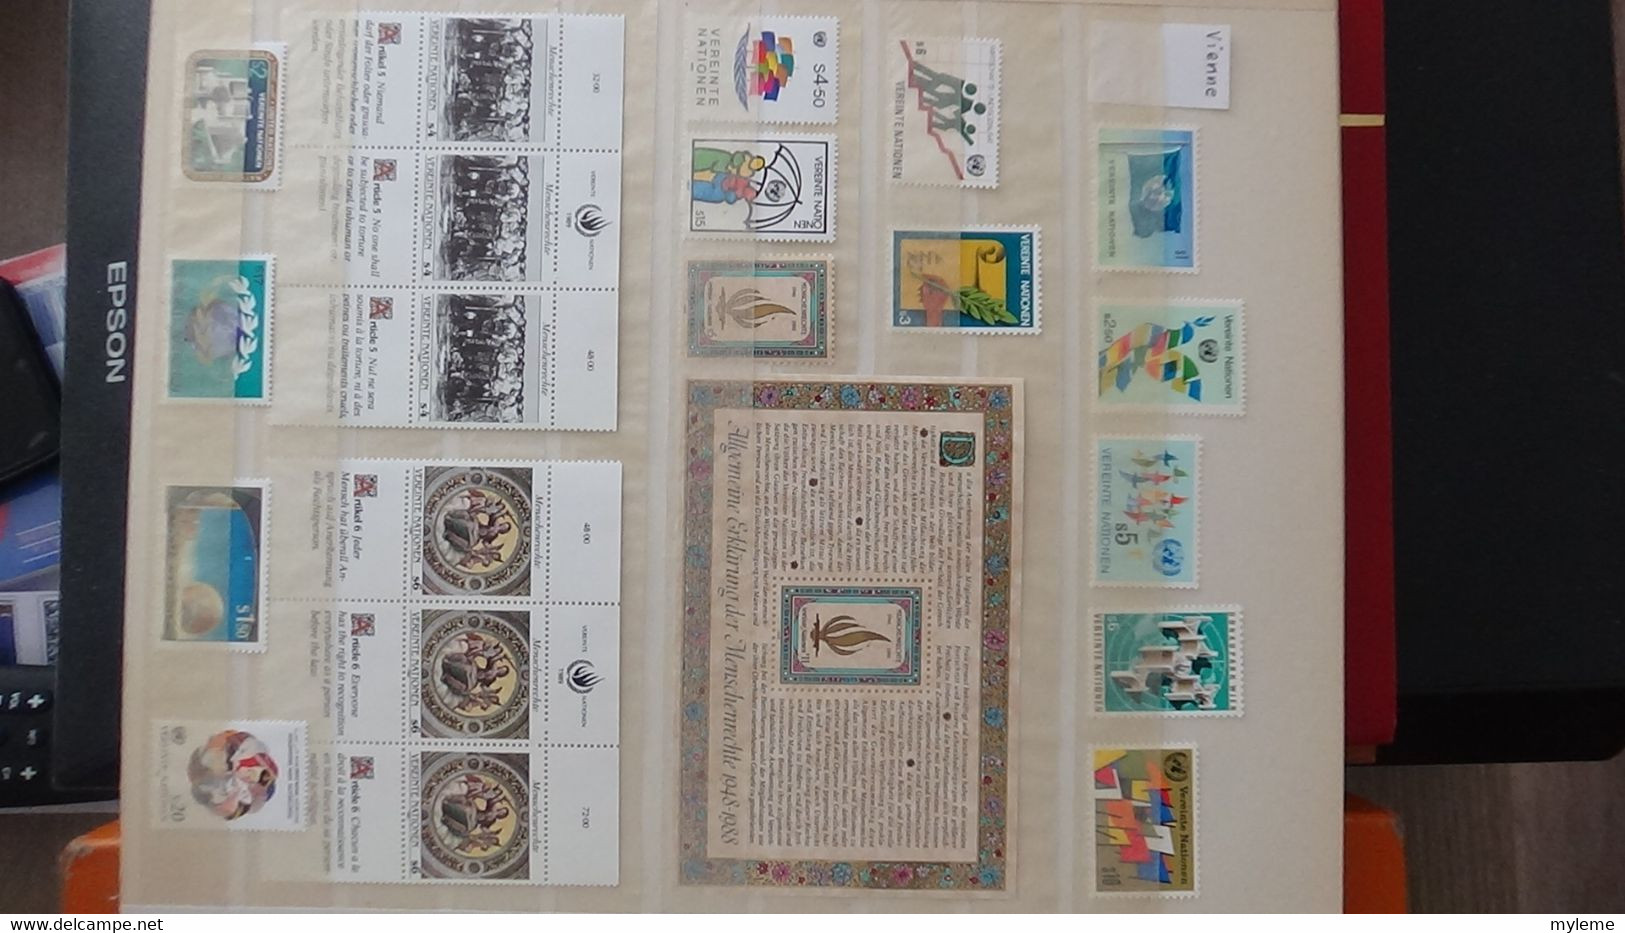 AN81 Collection de blocs et timbres ** des nations Unies . A saisir !!!